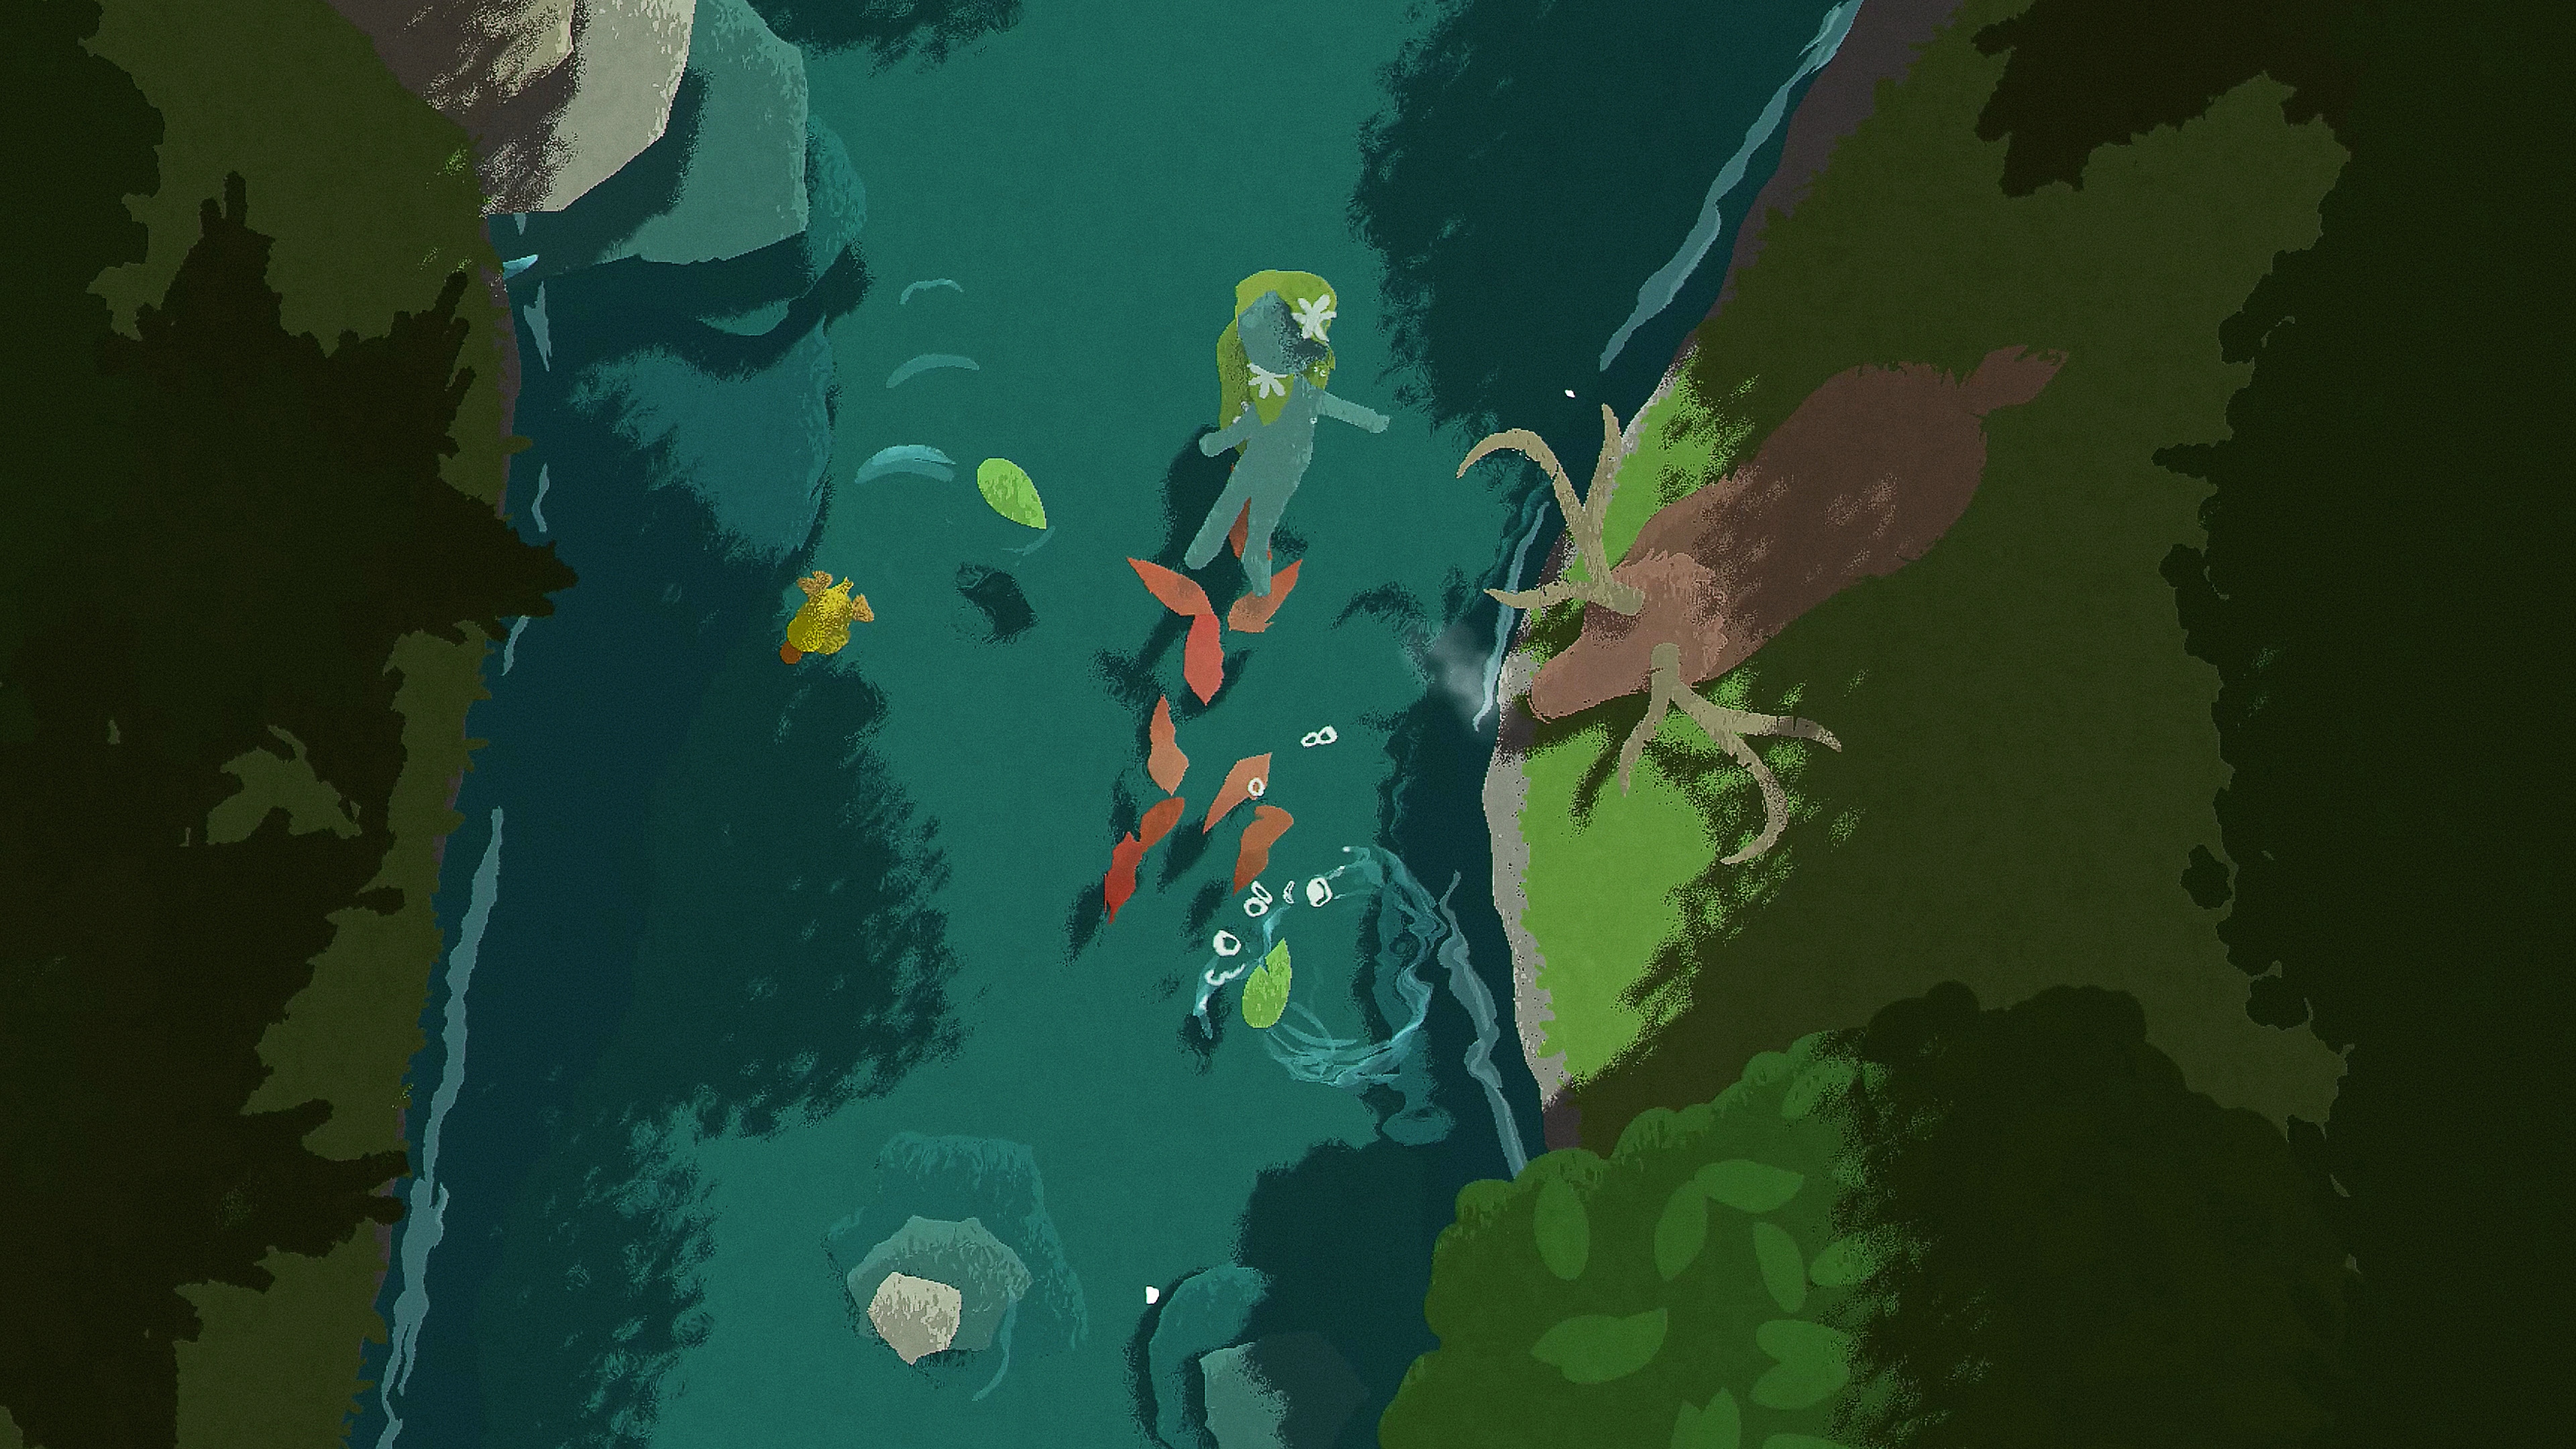 Captura de pantalla de Naiad que muestra a un personaje flotando por un río mientras un ciervo se encuentra de pie en la orilla del río